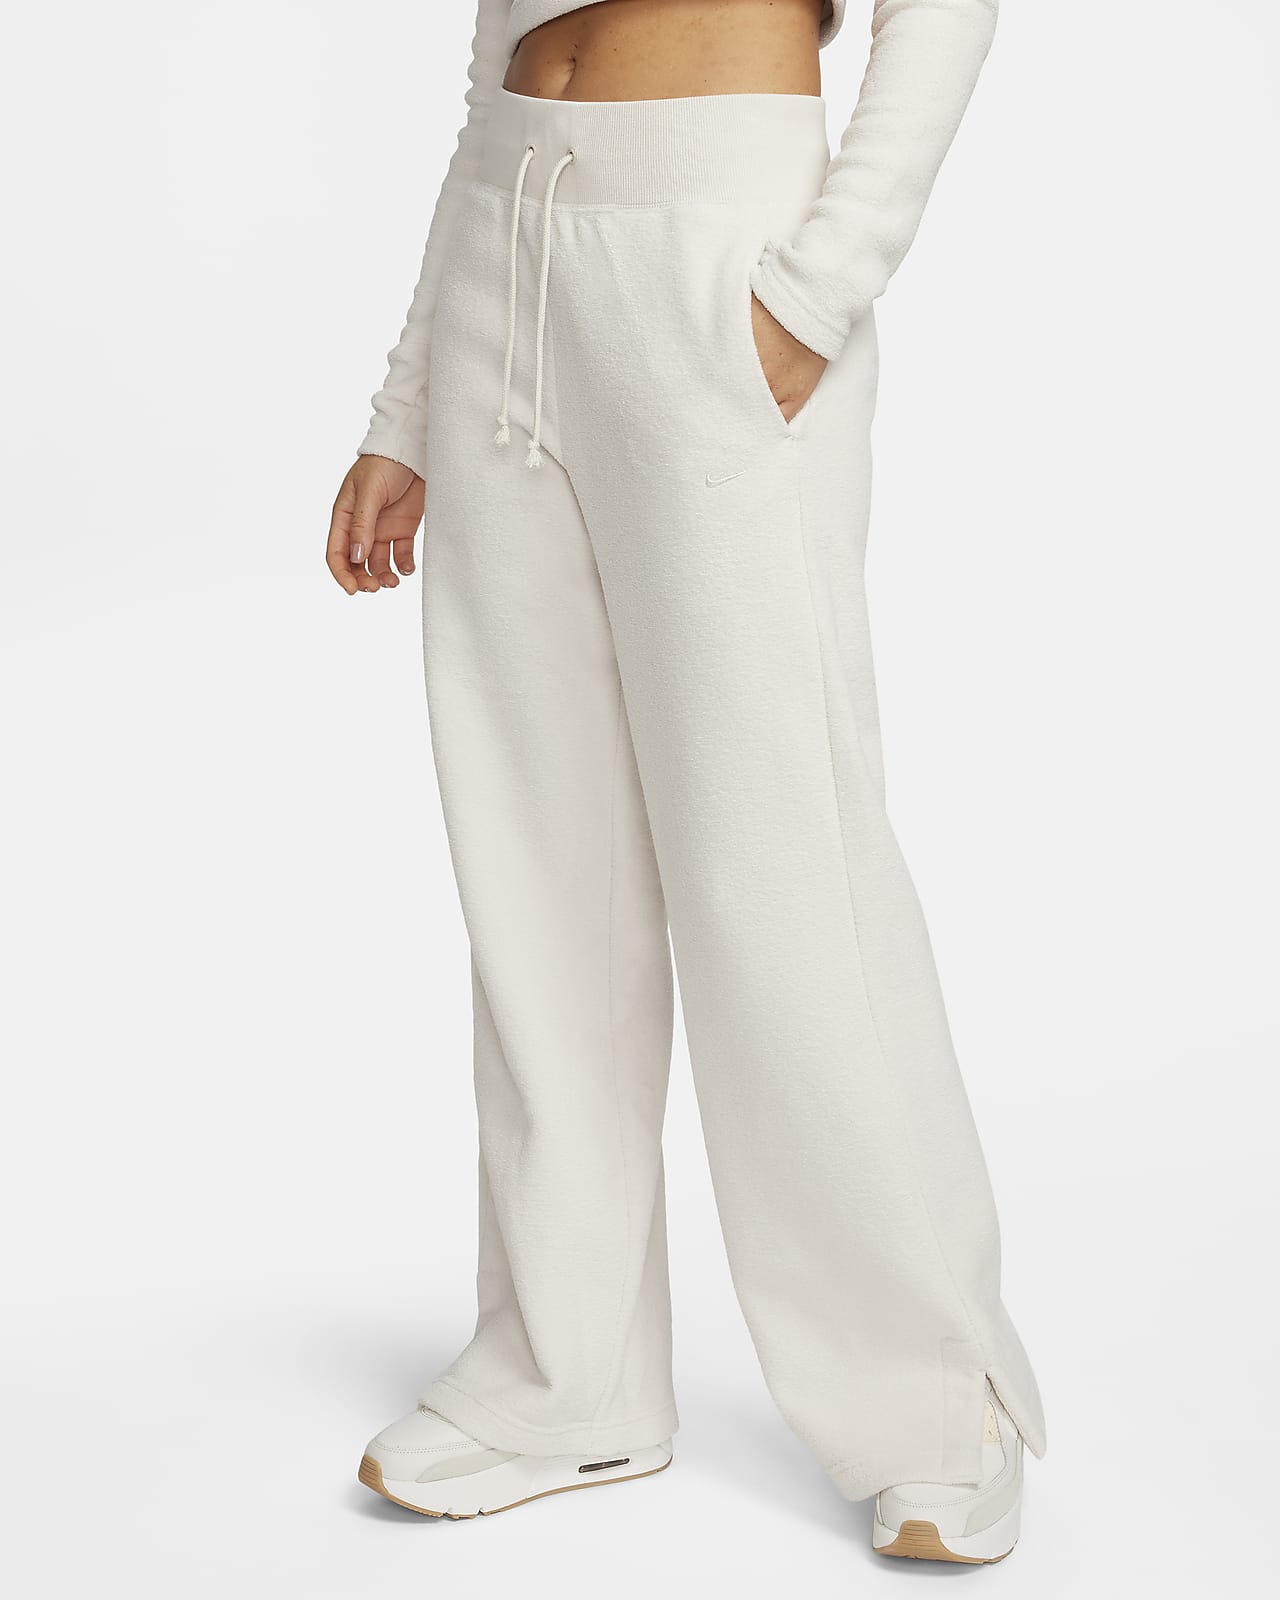 Γυναικείο άνετο ψηλόμεσο παντελόνι από φλις ύφασμα με φαρδιά μπατζάκια Nike Sportswear Phoenix Plush